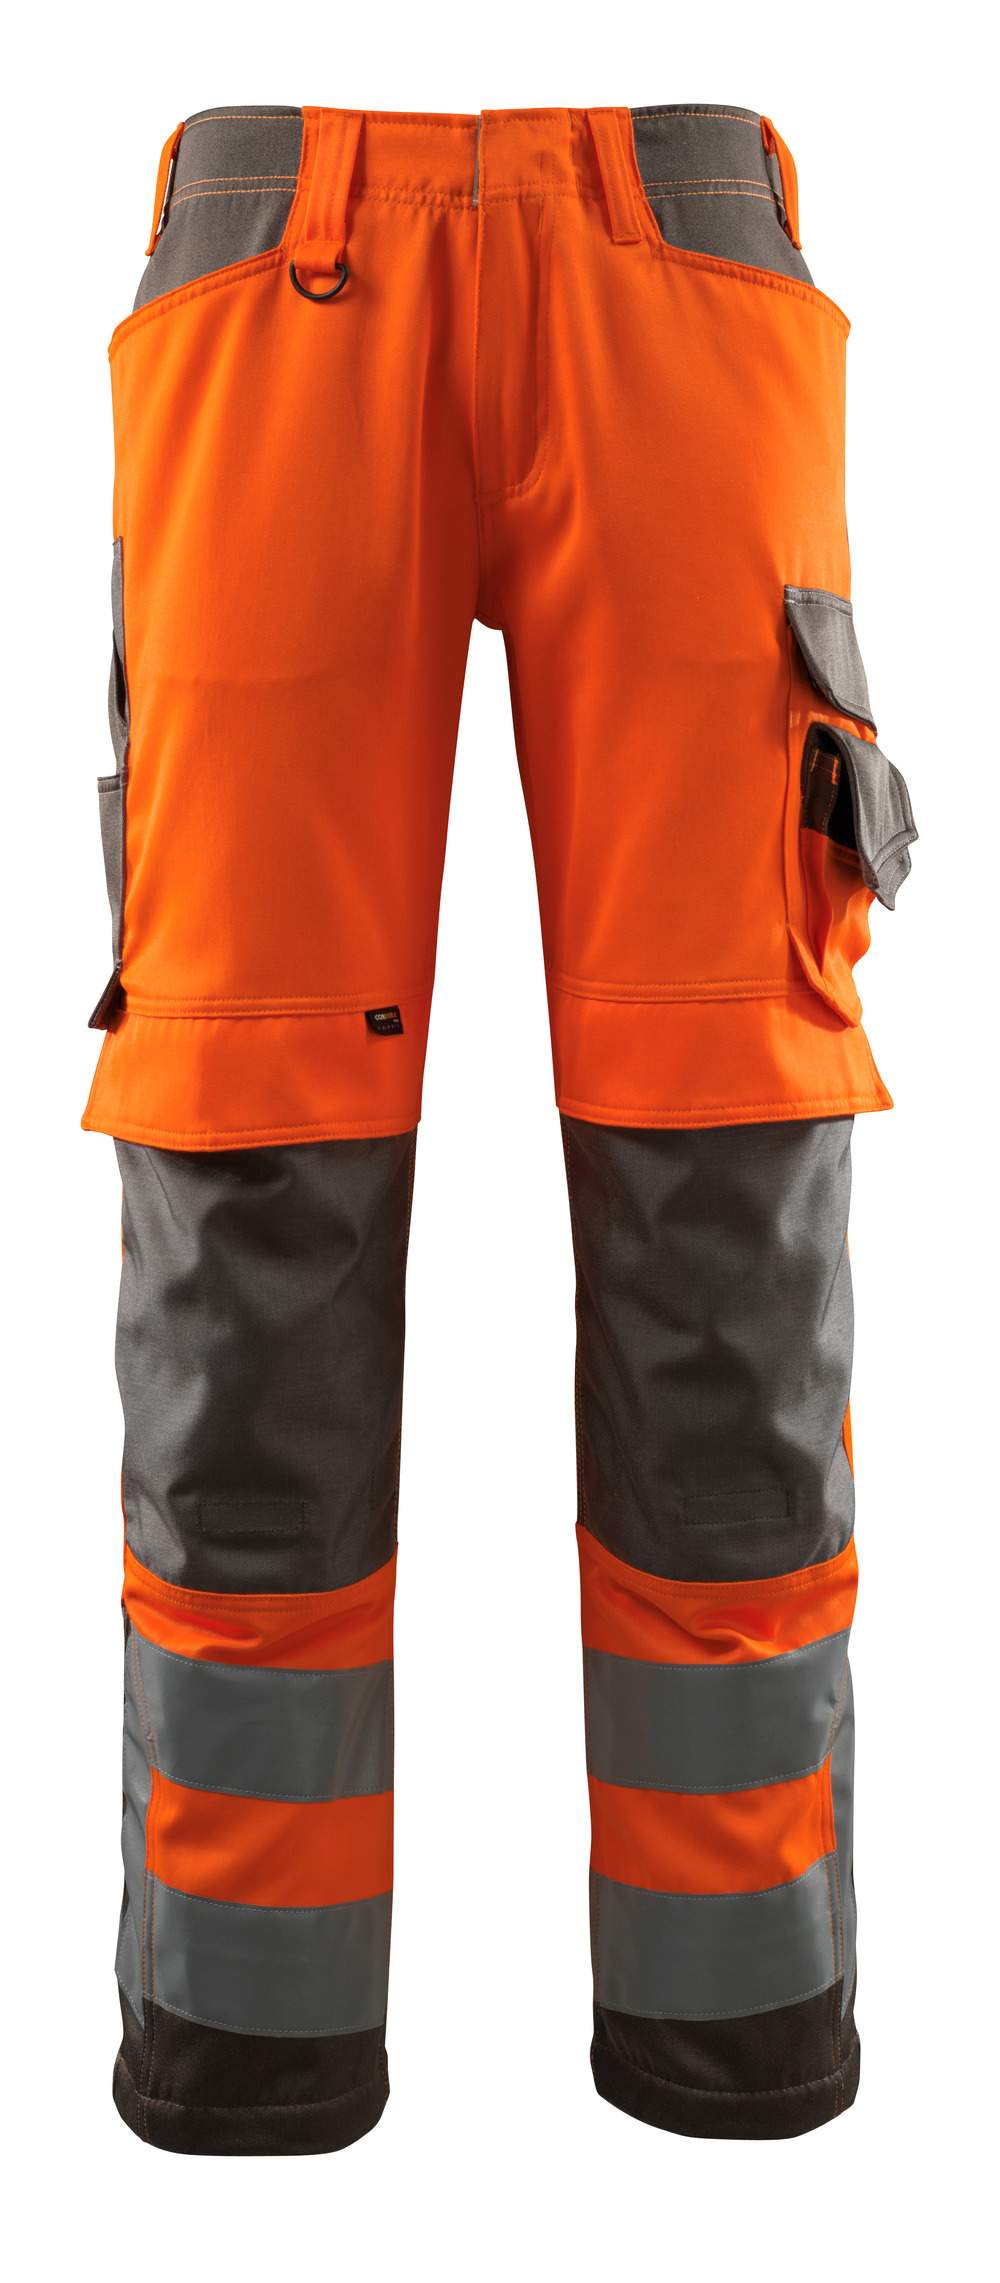 MASCOT-Warnschutz, Warn-Bund-Hose, Kendal,  76 cm, 290 g/m², orange/dunkelanthrazit

